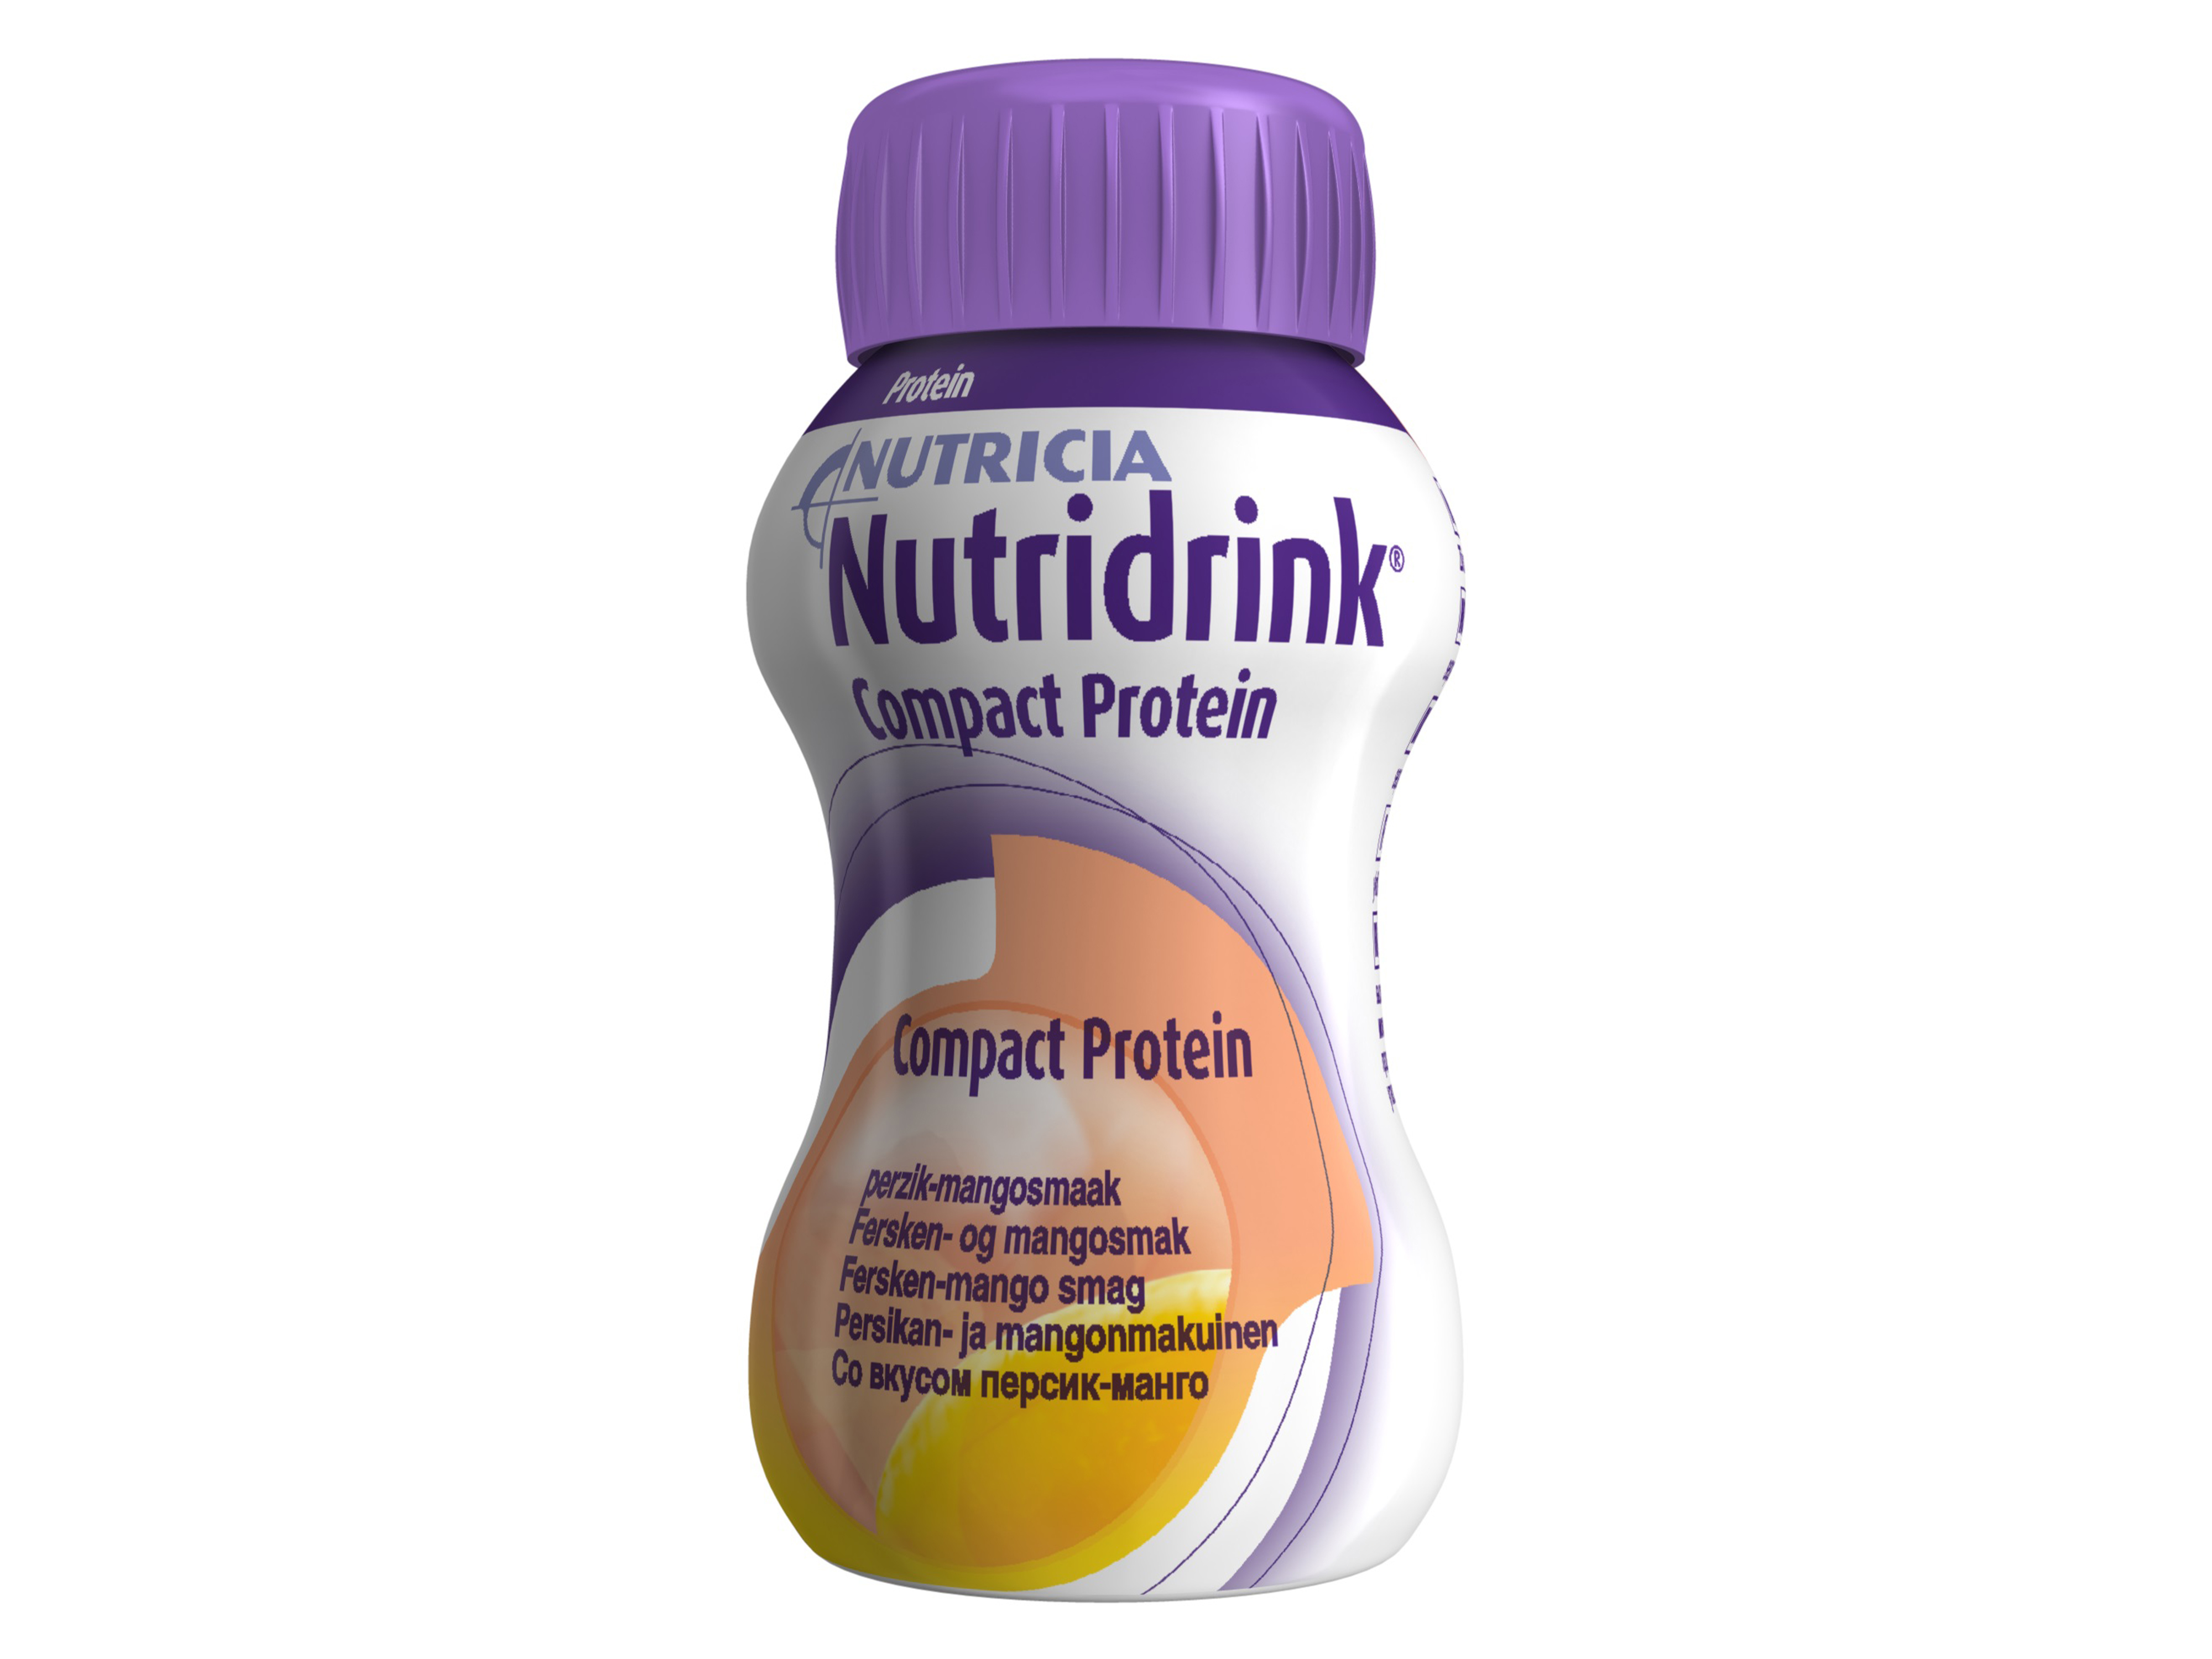 Nutridrink Compact proteinrik næringsdrikk, Fersken og mango, 4 x 125 ml